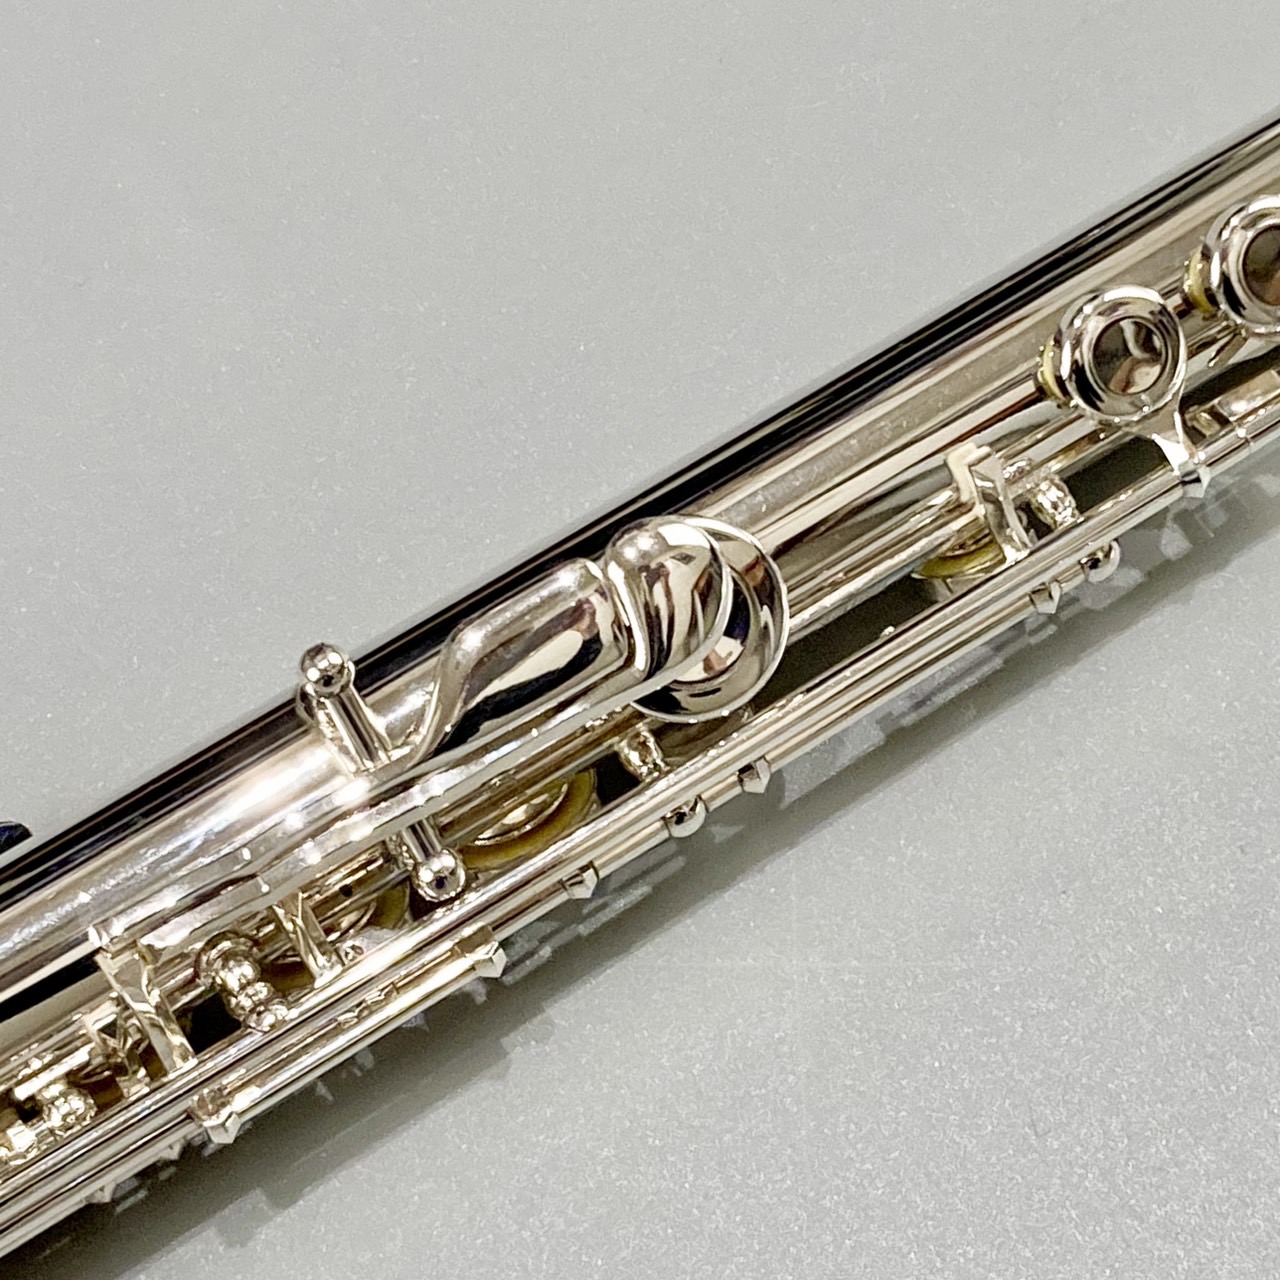 Pearl パール フルート 銀製 頭部管 - 管楽器